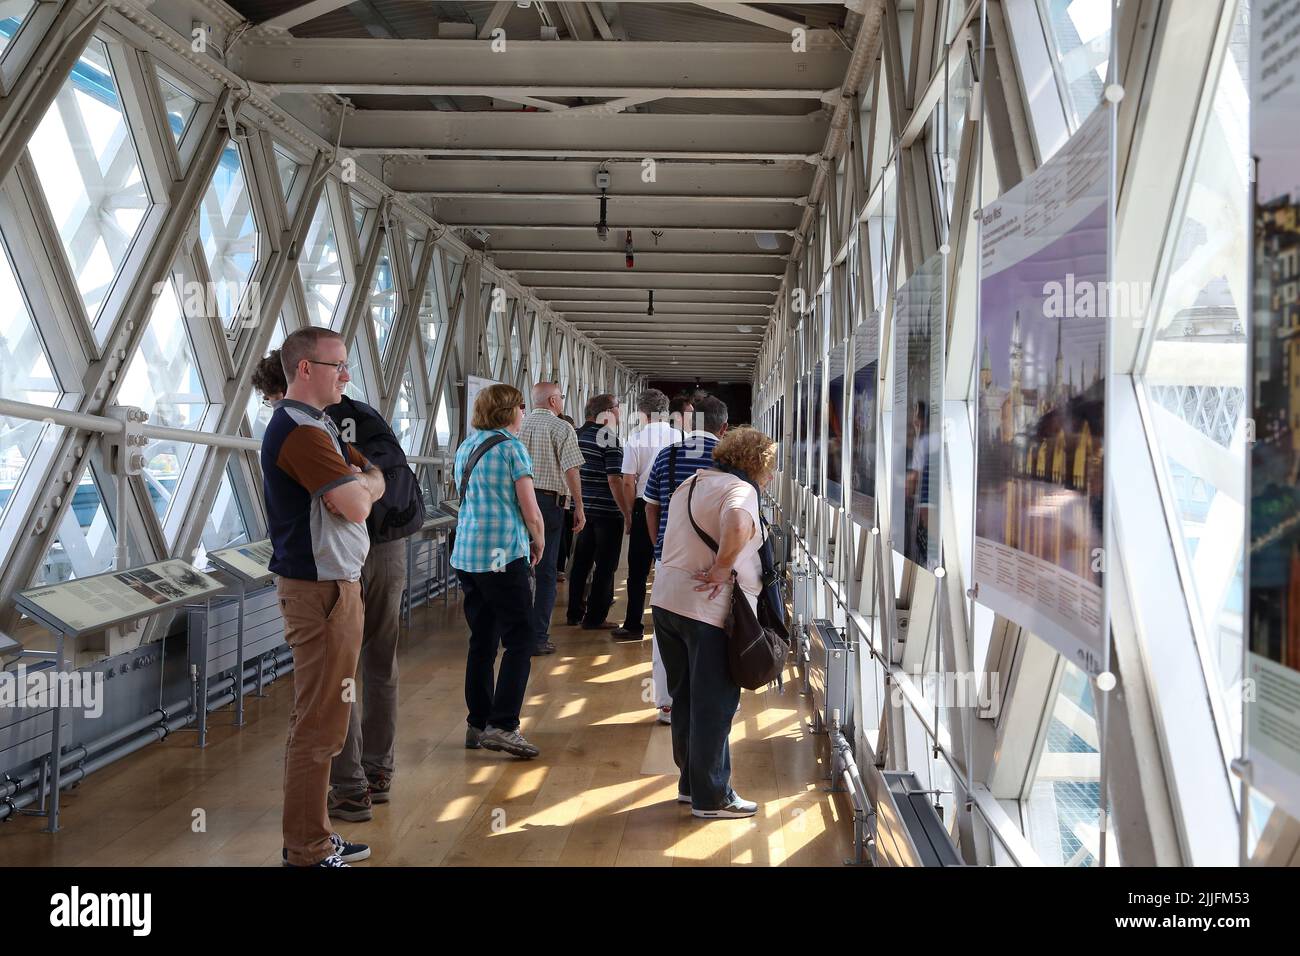 LONDRA, GRAN BRETAGNA - 16 MAGGIO 2014: I visitatori esaminano la mostra presso la piattaforma di osservazione del Tower Bridge. Foto Stock